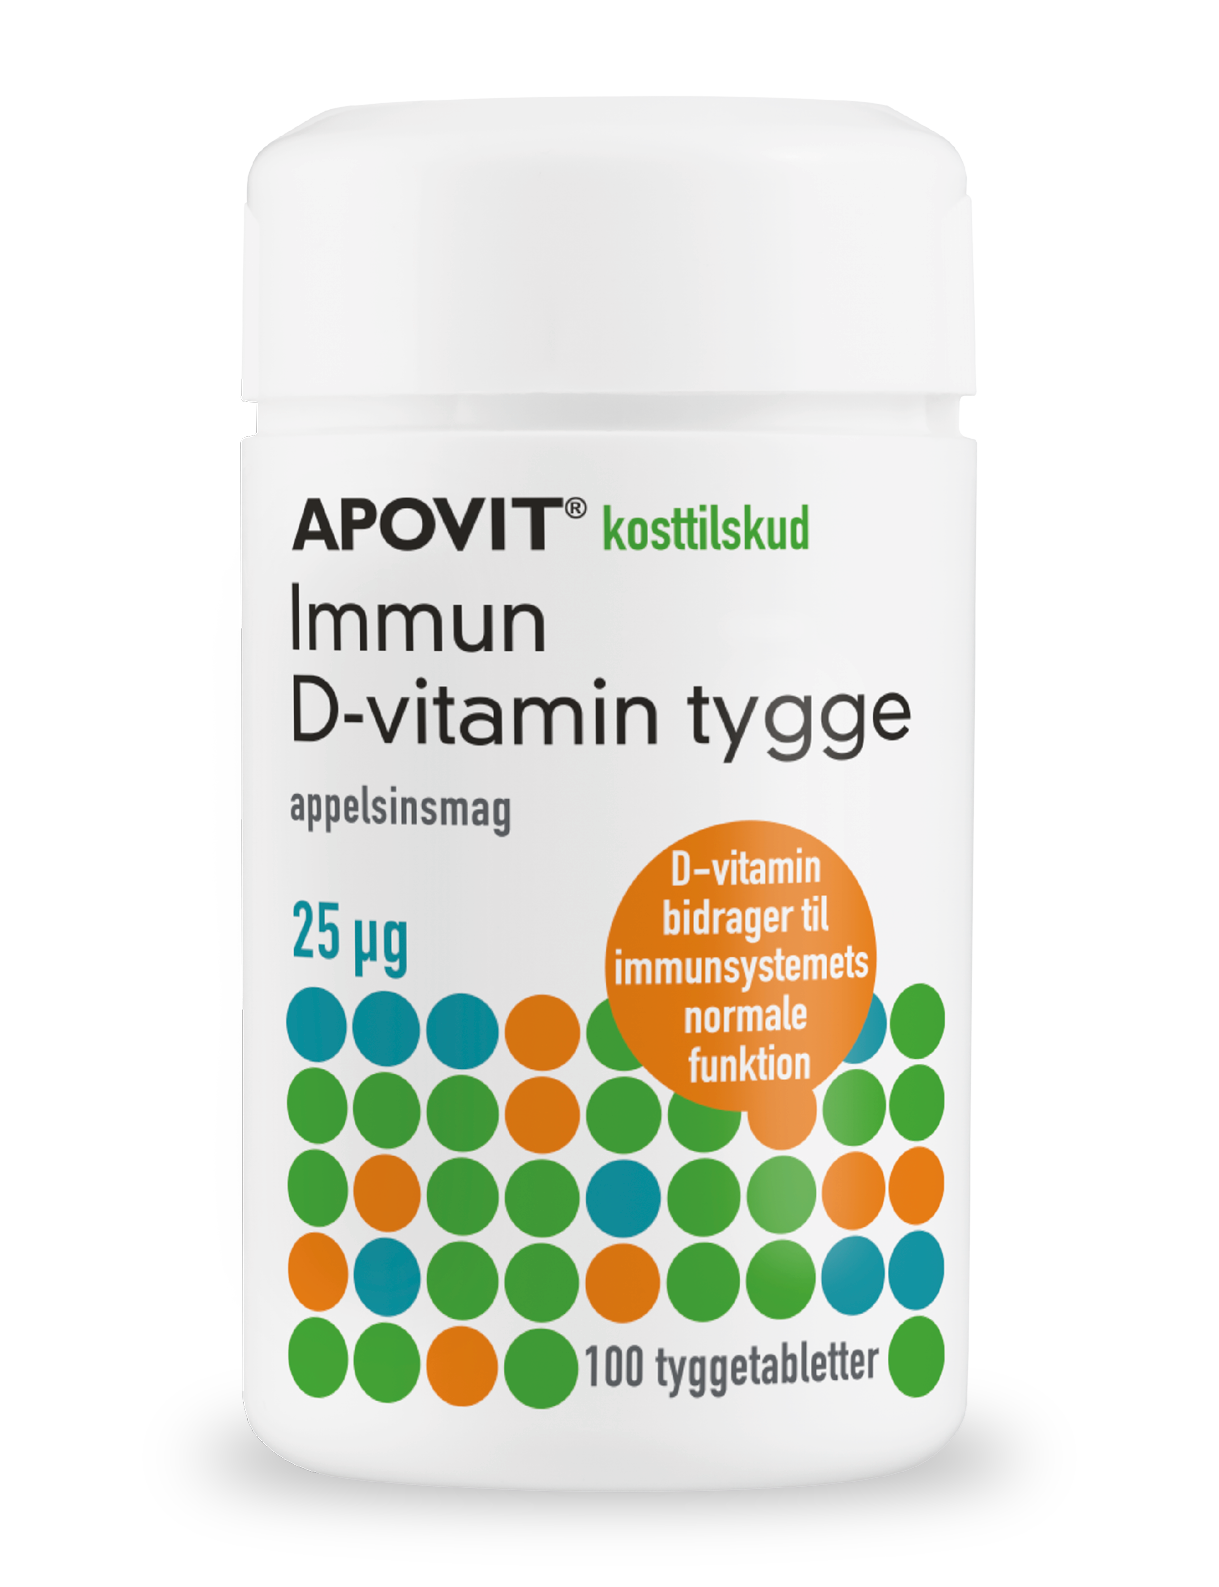 Immun D-vitamin tygge 25 µg, appelsinsmag